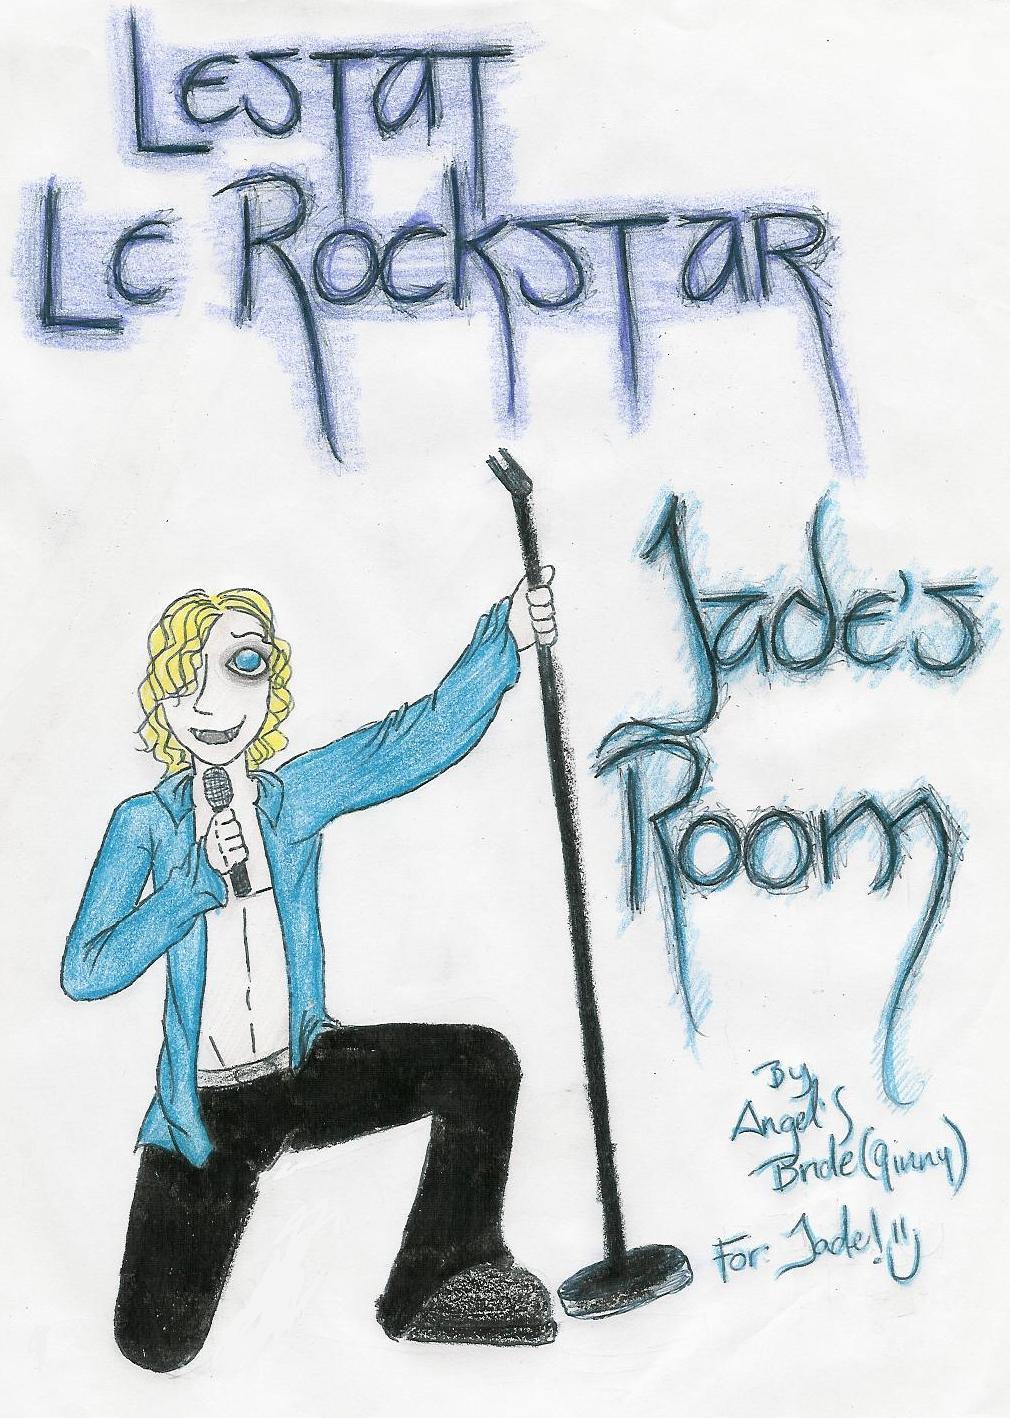 Monsieur Le Rock Star by Angel_s_Bride